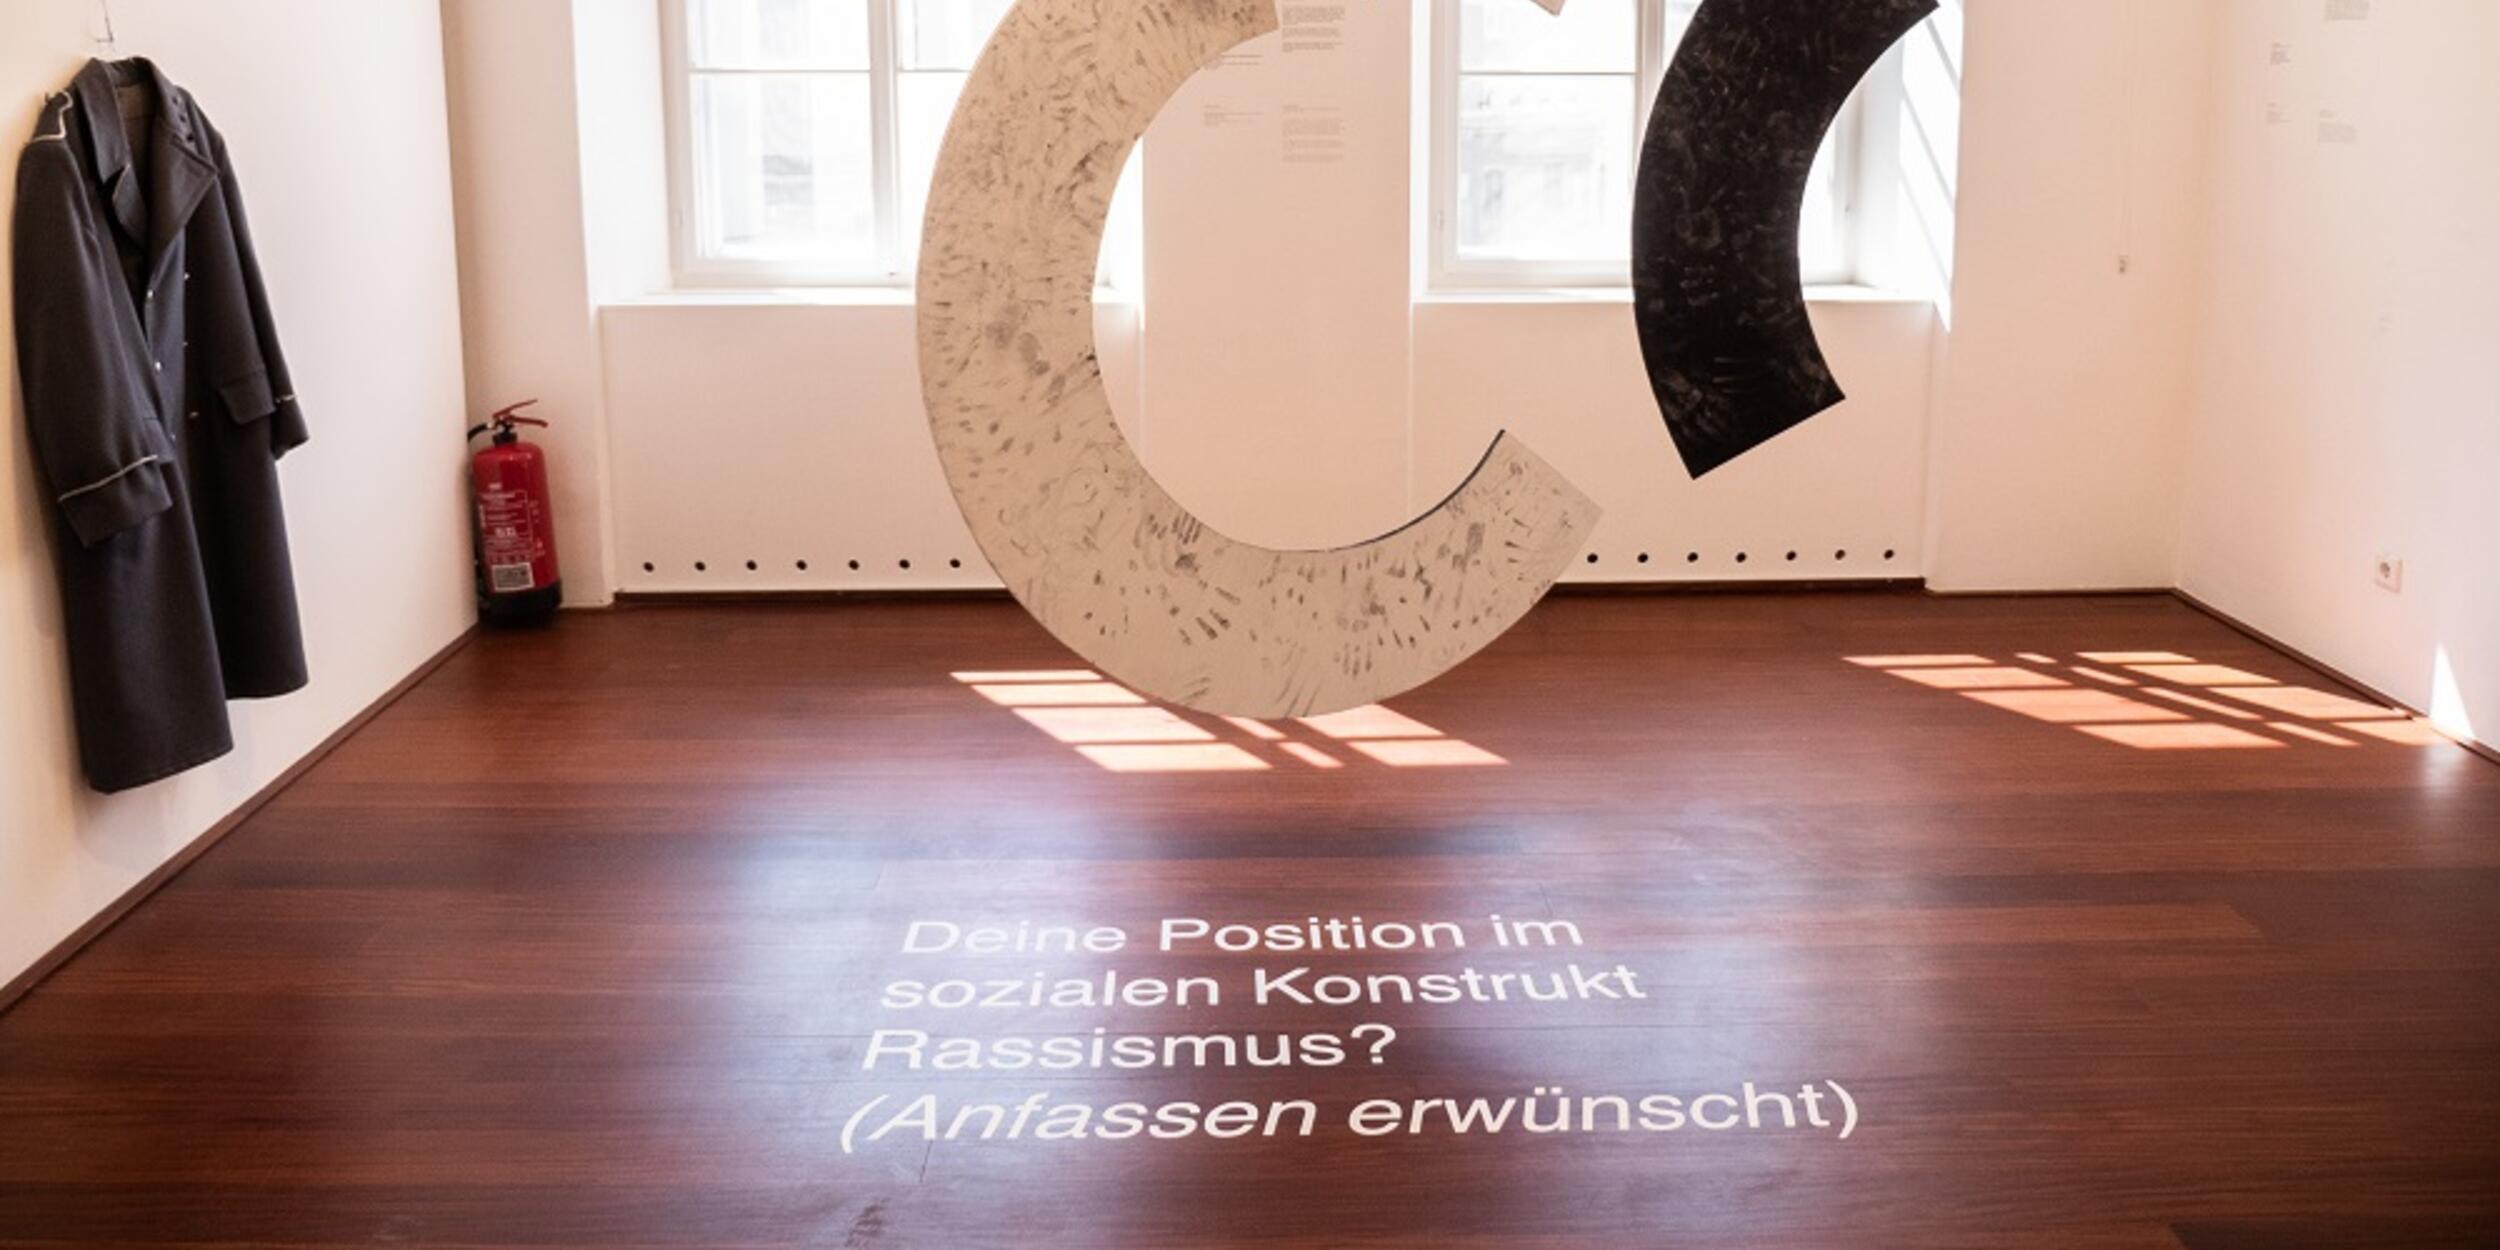 Bild der Ausstellung, ein C schwebt inmitten des Raumes | © Fabian Schober